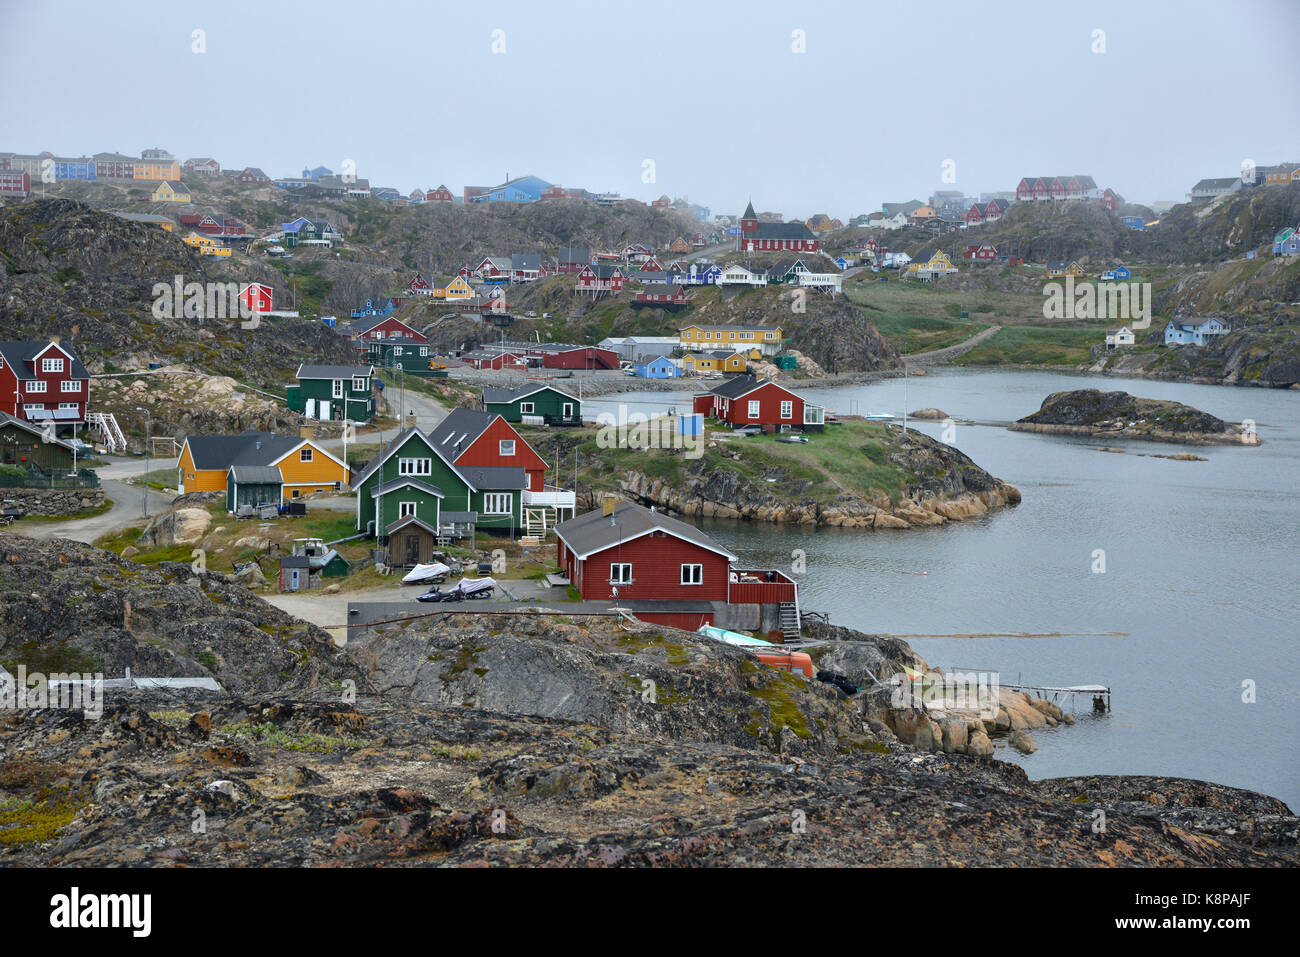 La ville de sisimiut, sur la côte ouest du Groenland. c'est le deuxième plus grand du pays, située dans un paysage montagneux, à 75 kilomètres au nord du cercle polaire. prises 16.08.2017. photo : karlheinz schindler/dpa-zentralbild/zb | conditions dans le monde entier Banque D'Images